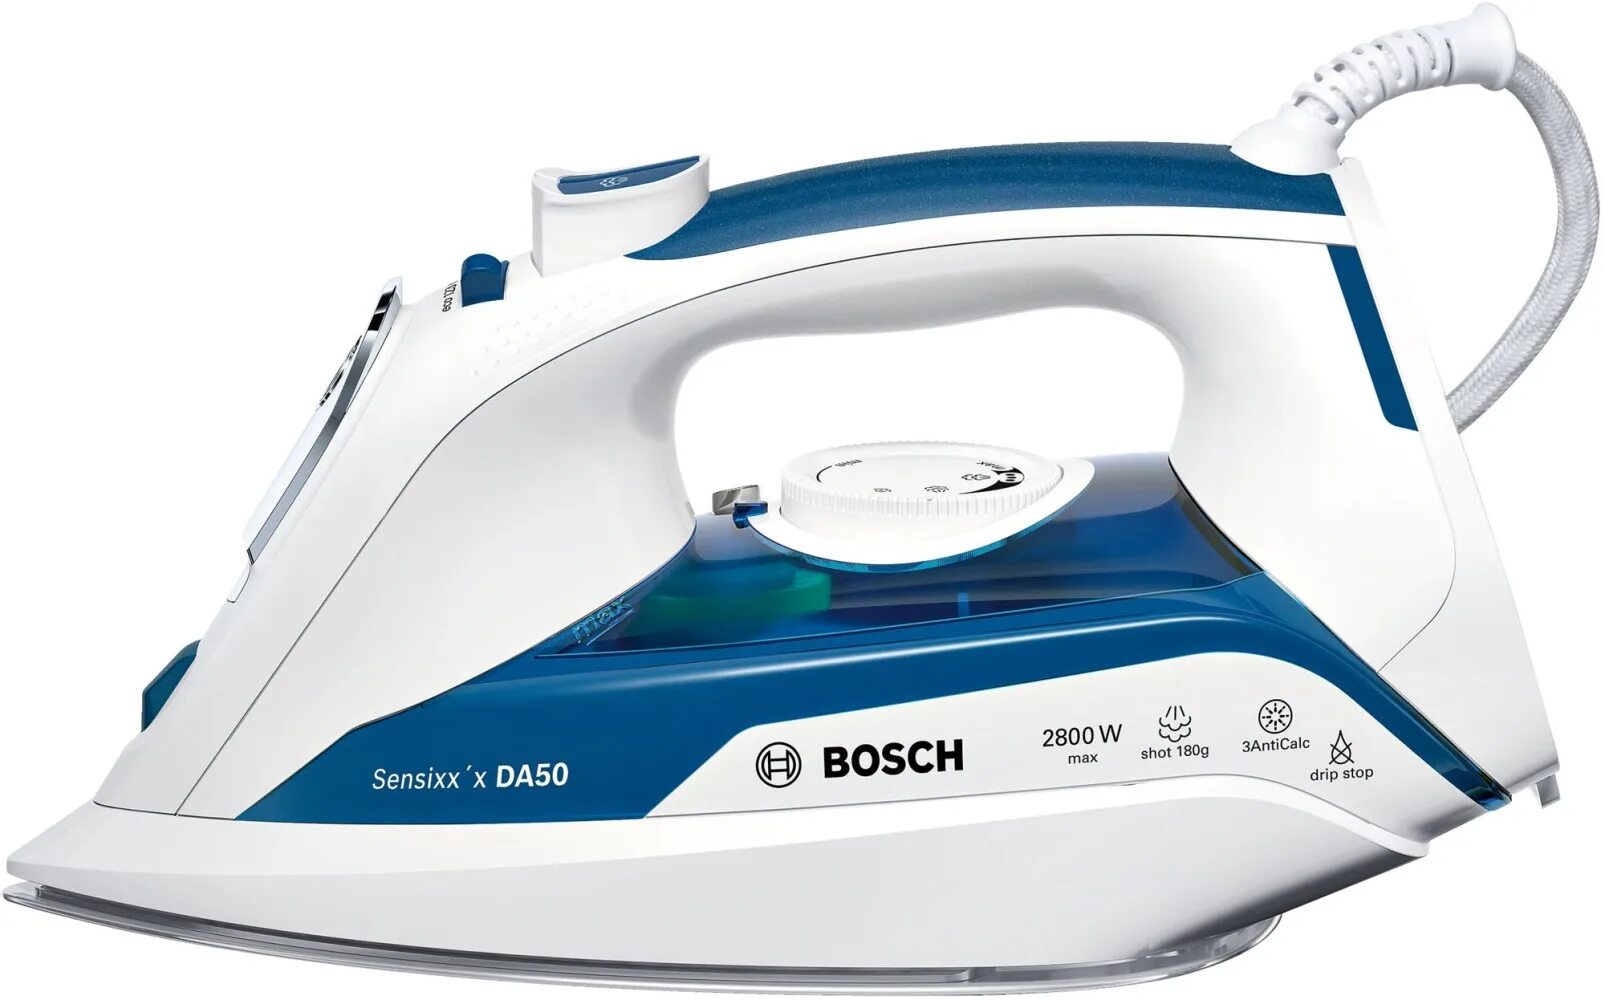 Утюг Bosch tda5024010. Утюг Bosch TDA 5028010. Утюг Bosch TDA 3026110. Утюг Bosch TDA 5024010 2400 Вт.